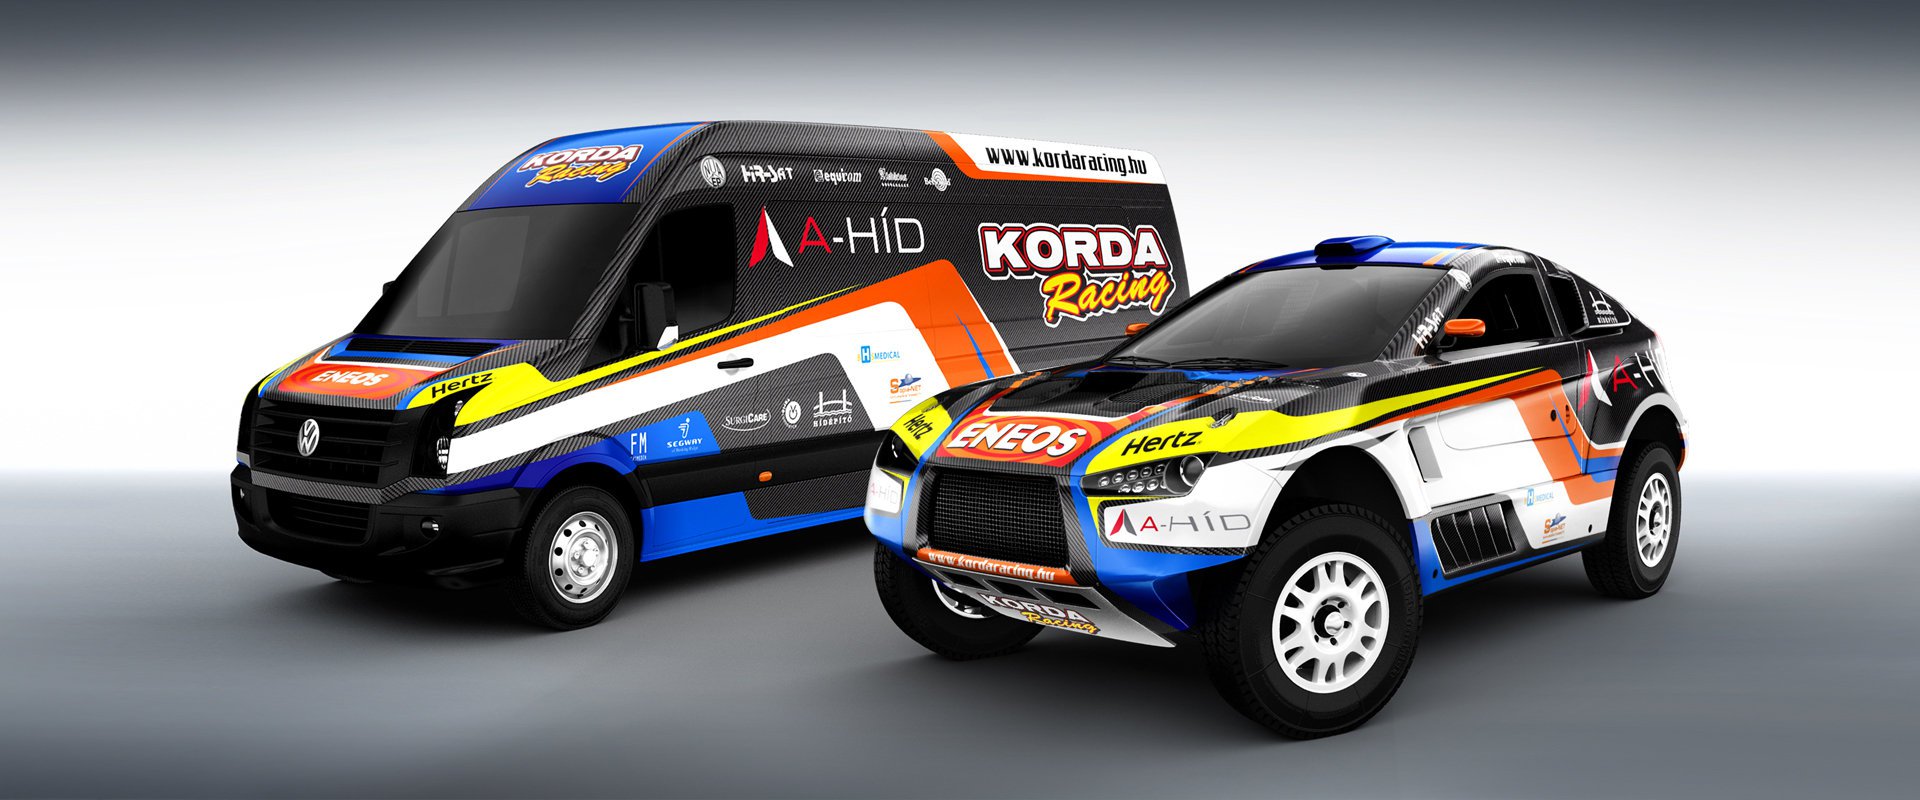 Korda Racing #4